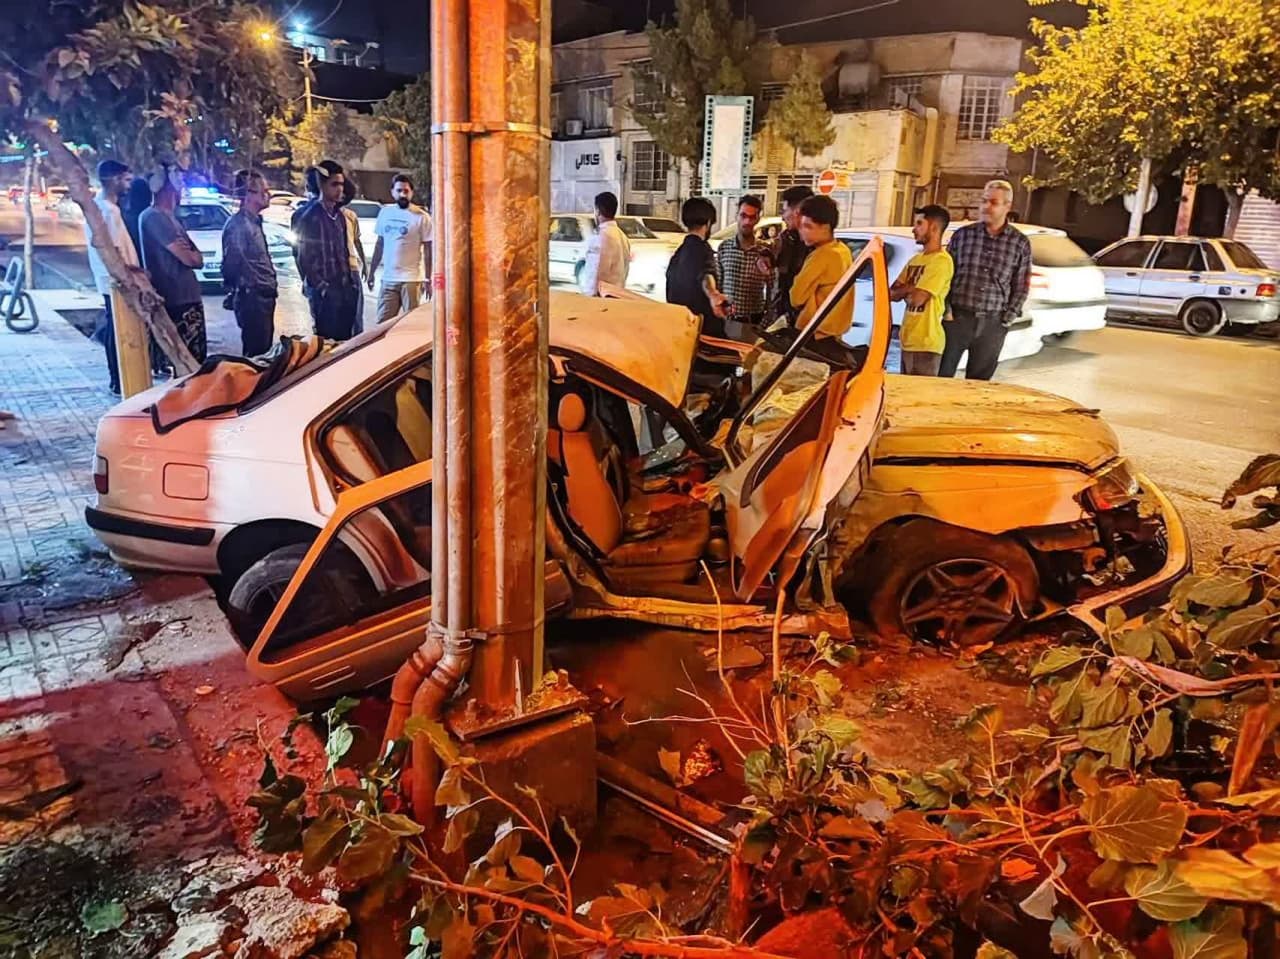 سرنشین خودرو پژو پارس در تصادف جان باخت